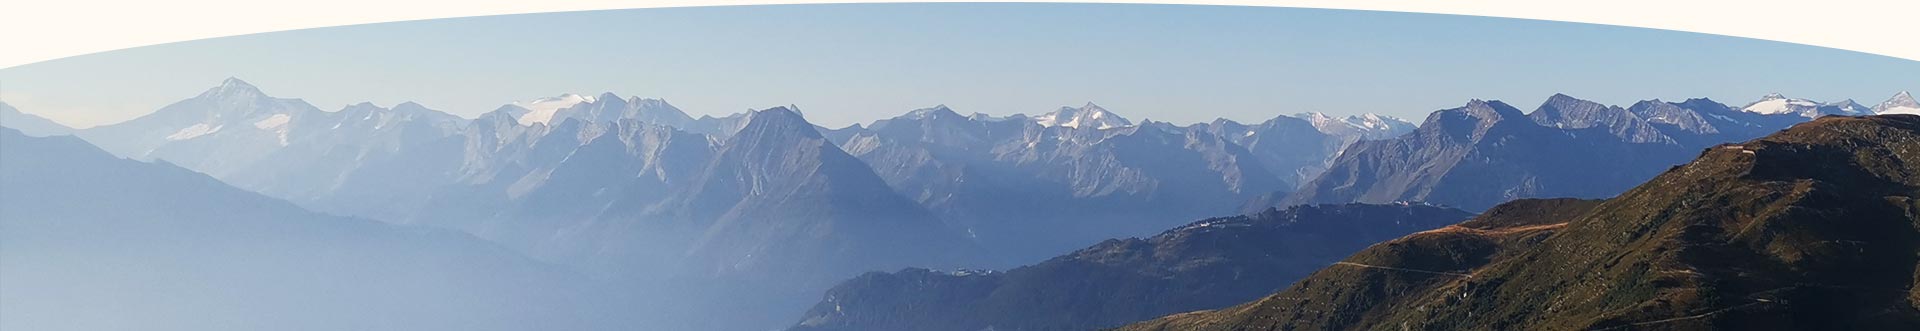 Blick auf die Berge im Sommer Zillertal